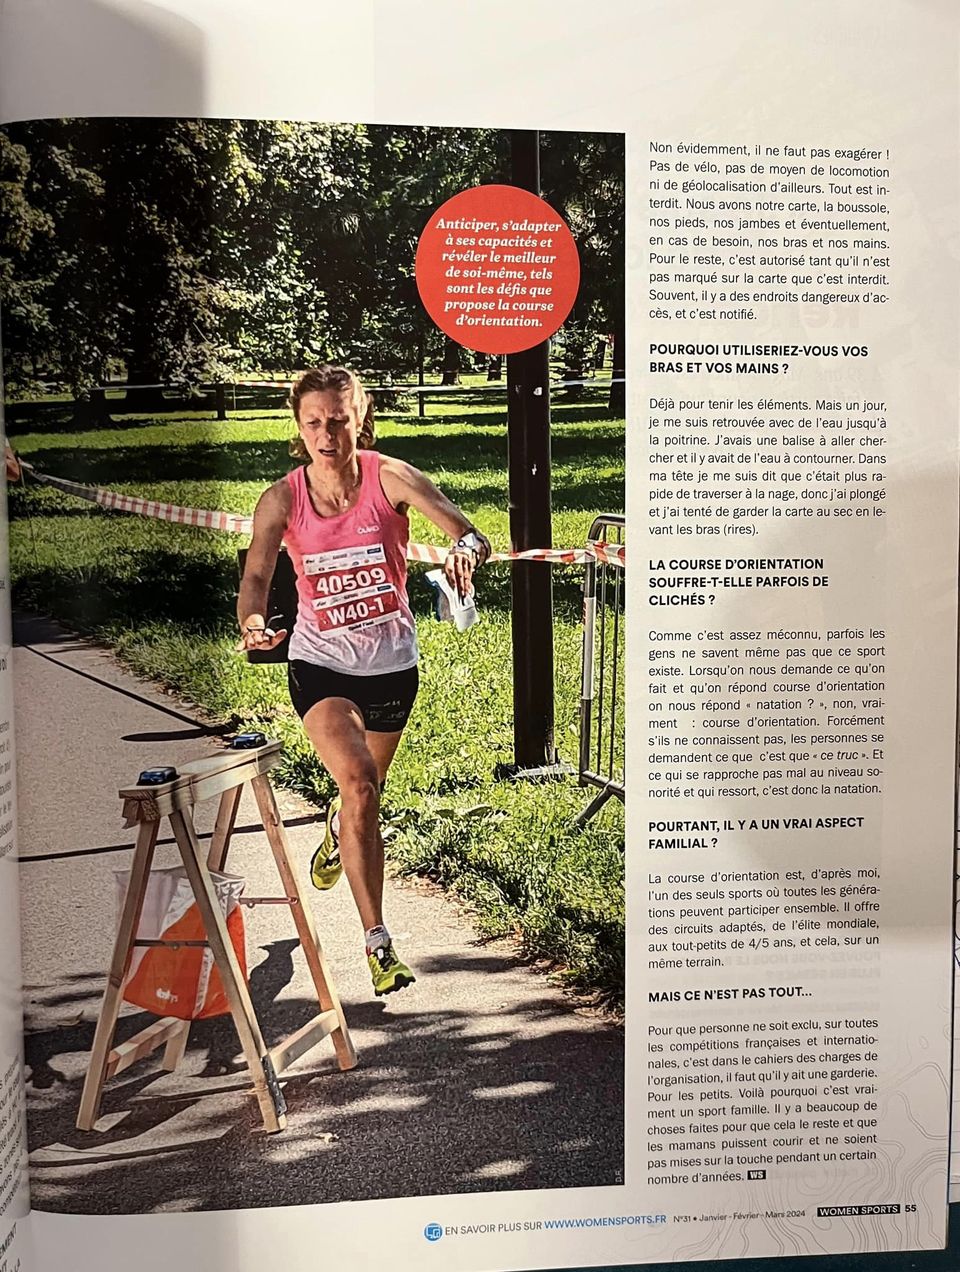 Merci le magazine WomenSports et Vars pour ce bel article sur la course d’orientation dans le numéro de ce début d’année !